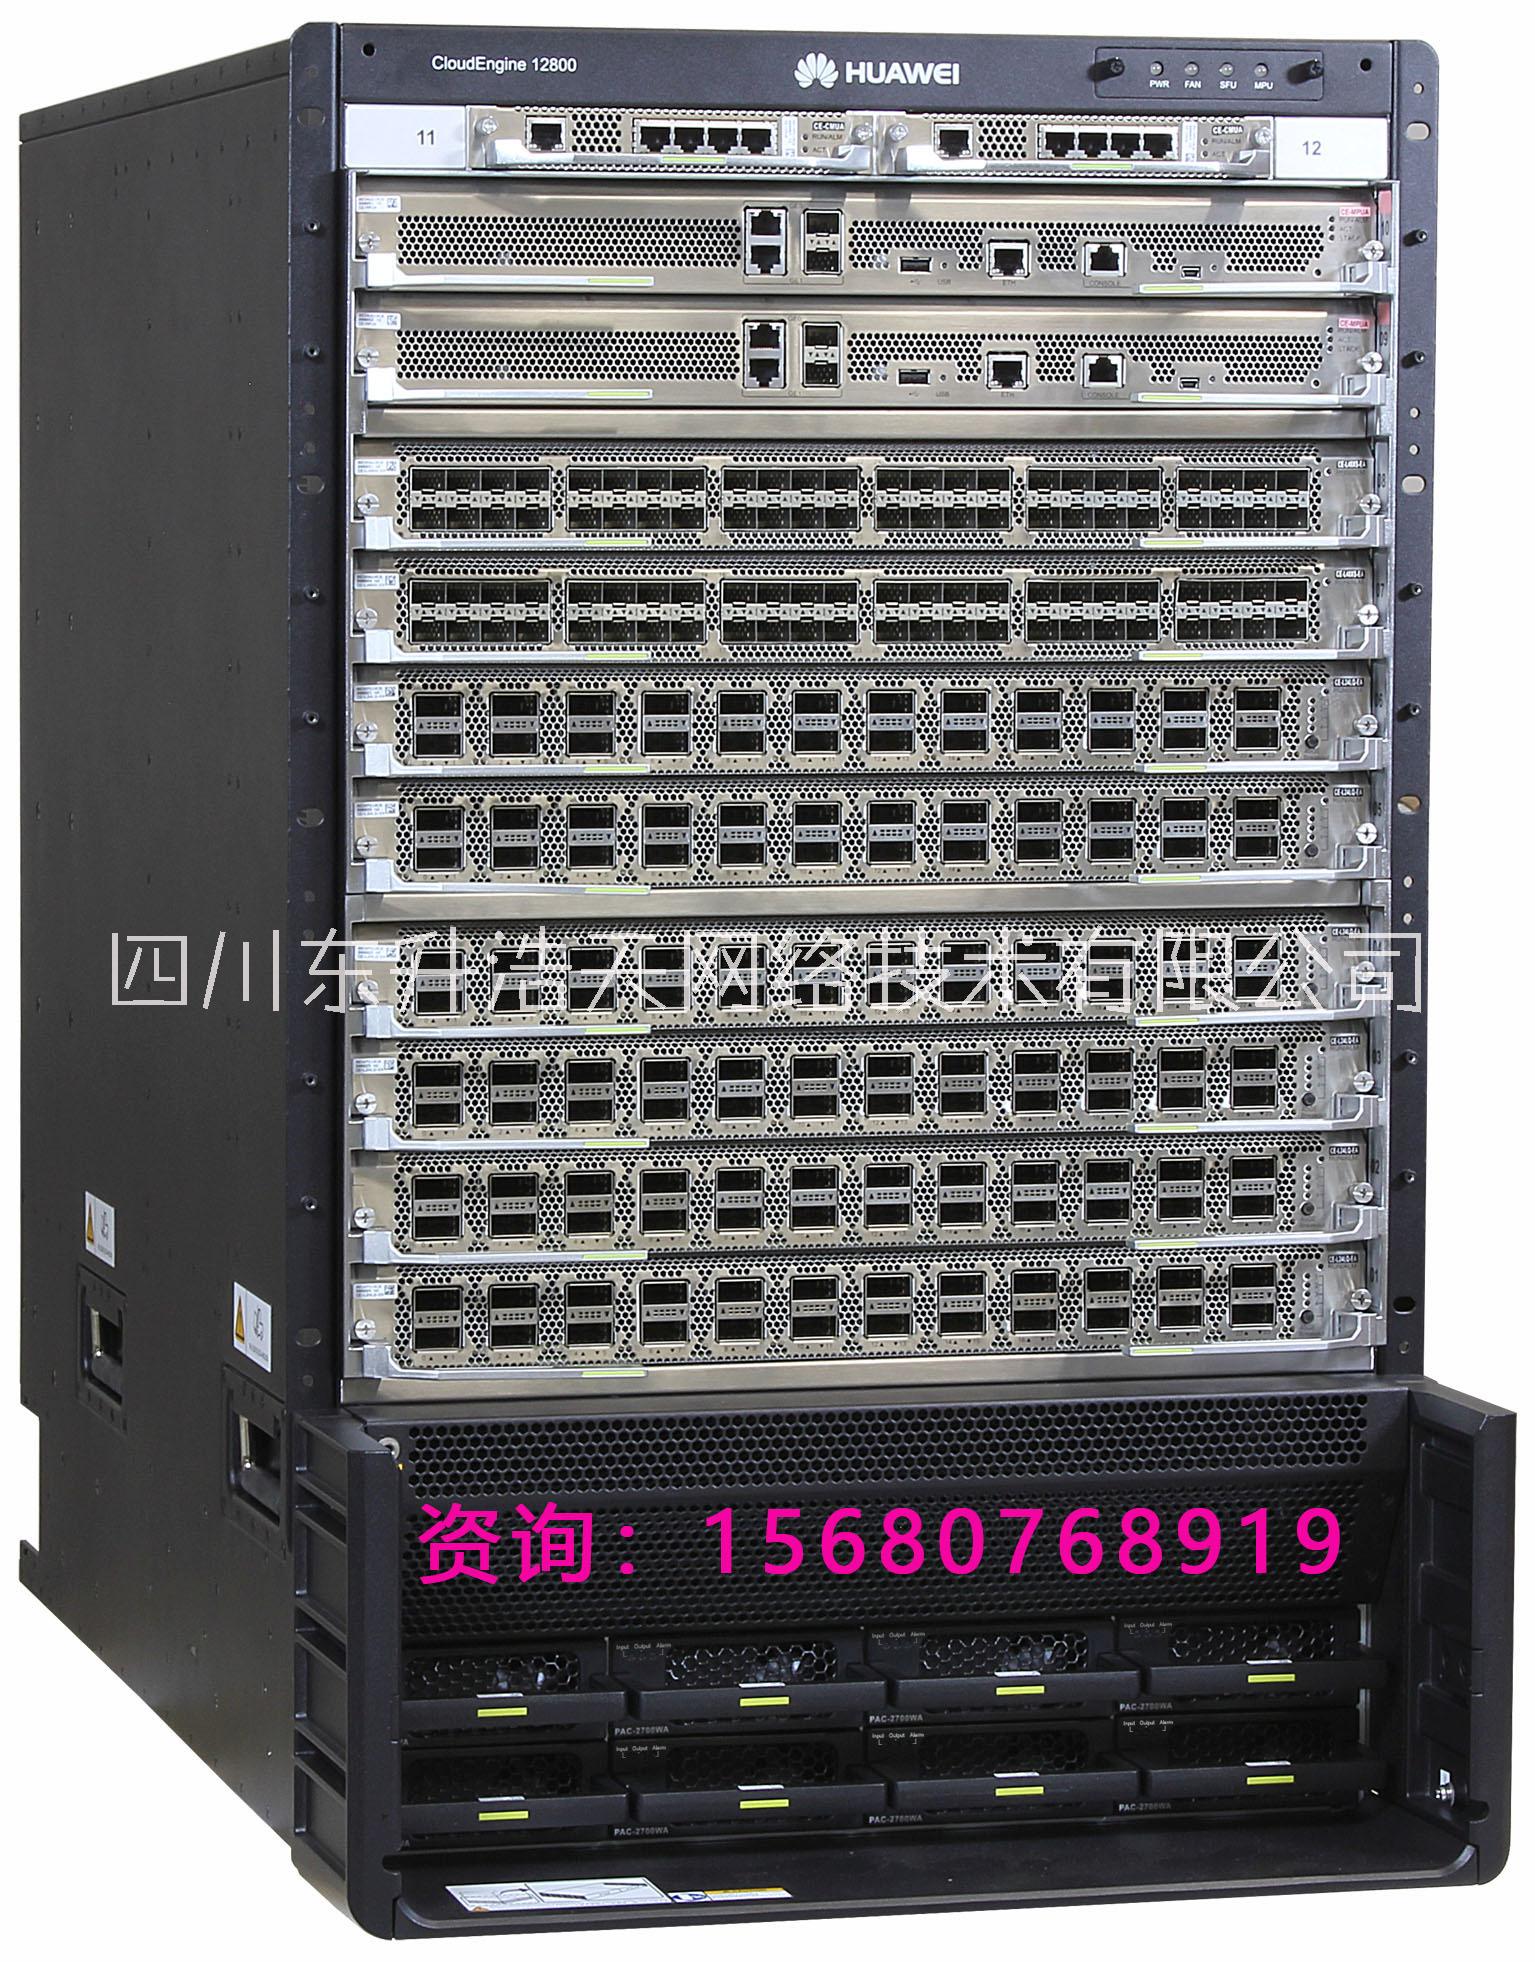 回收华为/思科数据中心CE12808/12804大型数据中心核心设备现货库存